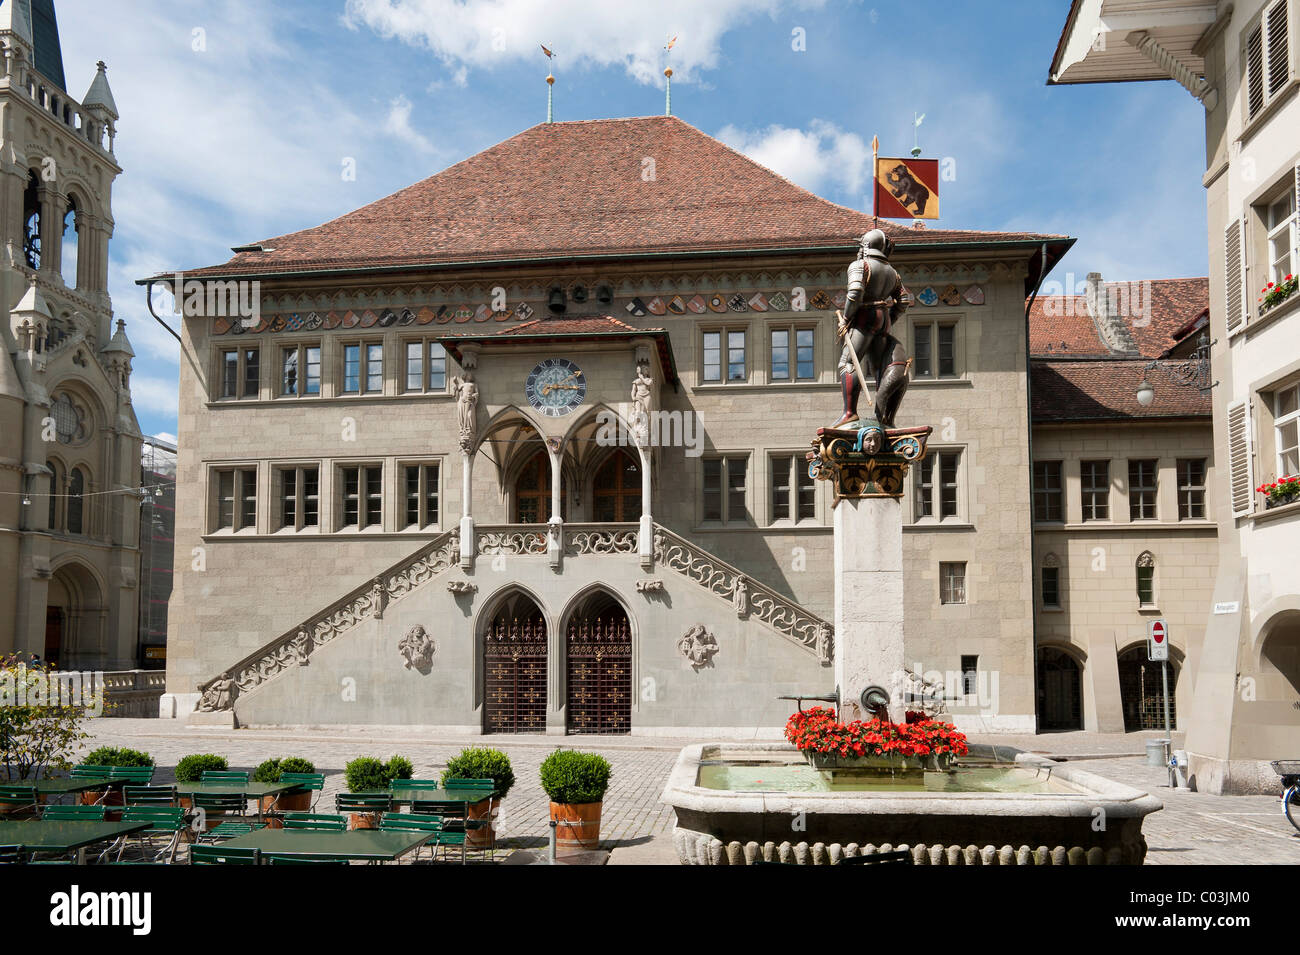 Town hall, Bern, canton of Bern, Switzerland, Europe Stock Photo